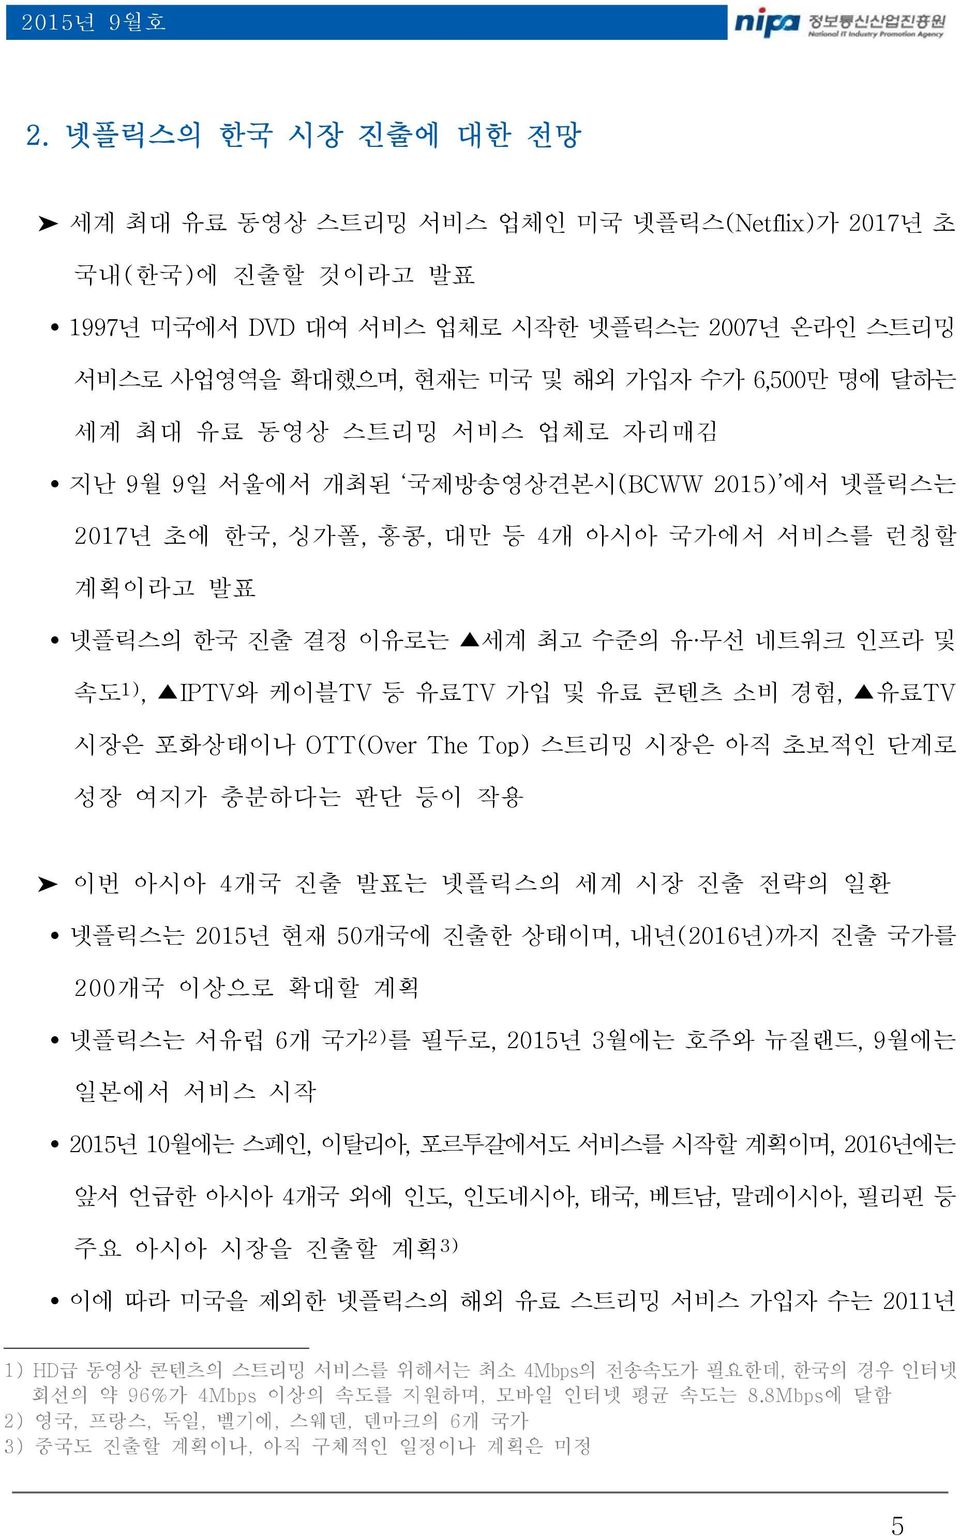 최대 유료 동영상 스트리밍 서비스 업체로 자리매김 지난 9월 9일 서울에서 개최된 국제방송영상견본시(BCWW 2015) 에서 넷플릭스는 2017년 초에 한국, 싱가폴, 홍콩, 대만 등 4개 아시아 국가에서 서비스를 런칭할 계획이라고 발표 넷플릭스의 한국 진출 결정 이유로는 세계 최고 수준의 유 무선 네트워크 인프라 및 속도 1), IPTV와 케이블TV 등